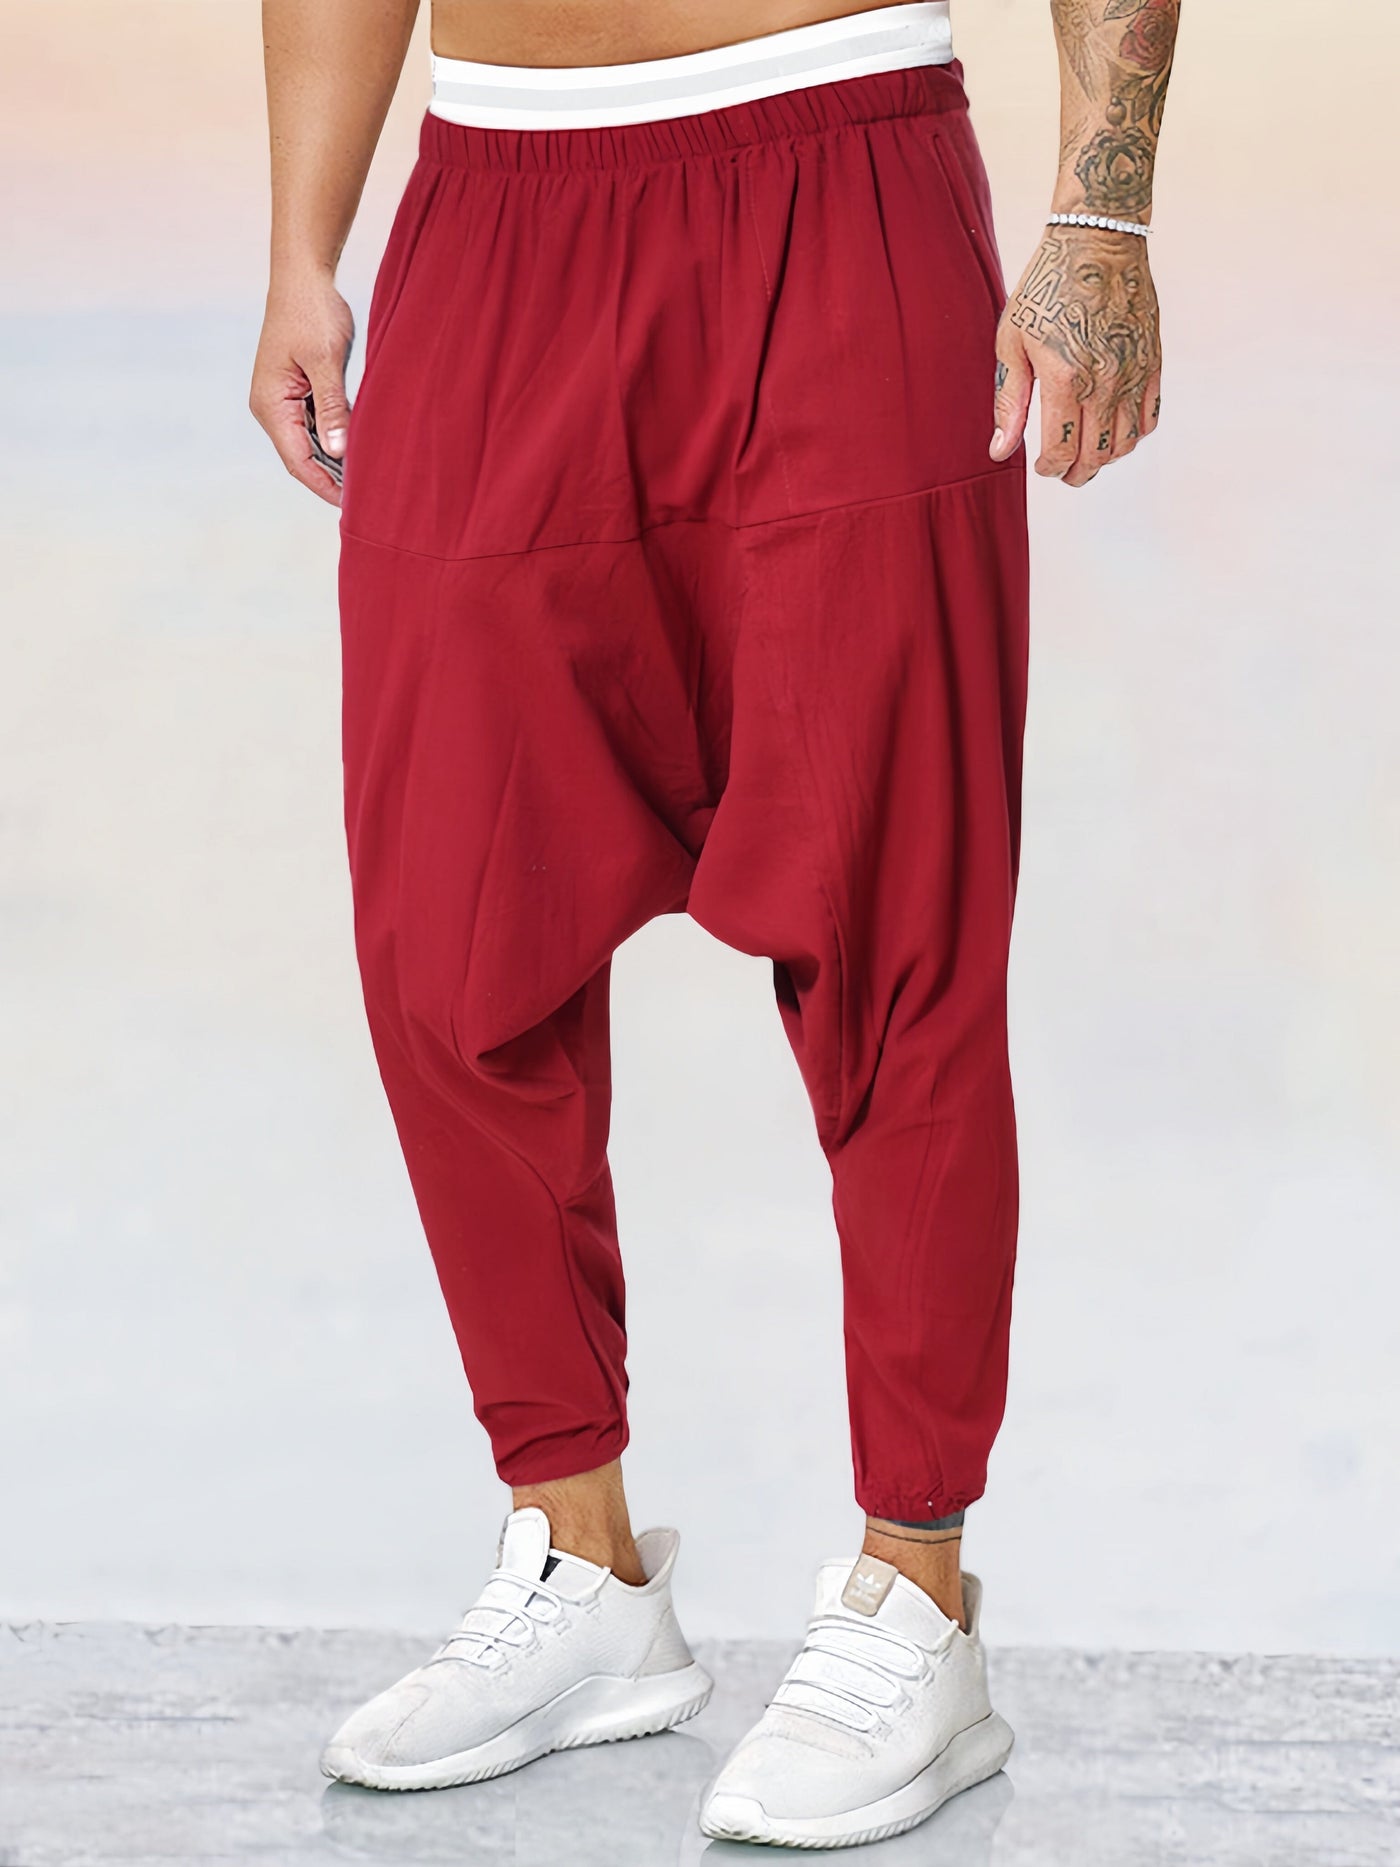 Cotton Linen Solid Color Harem Pants Pants coofandystore Red M 